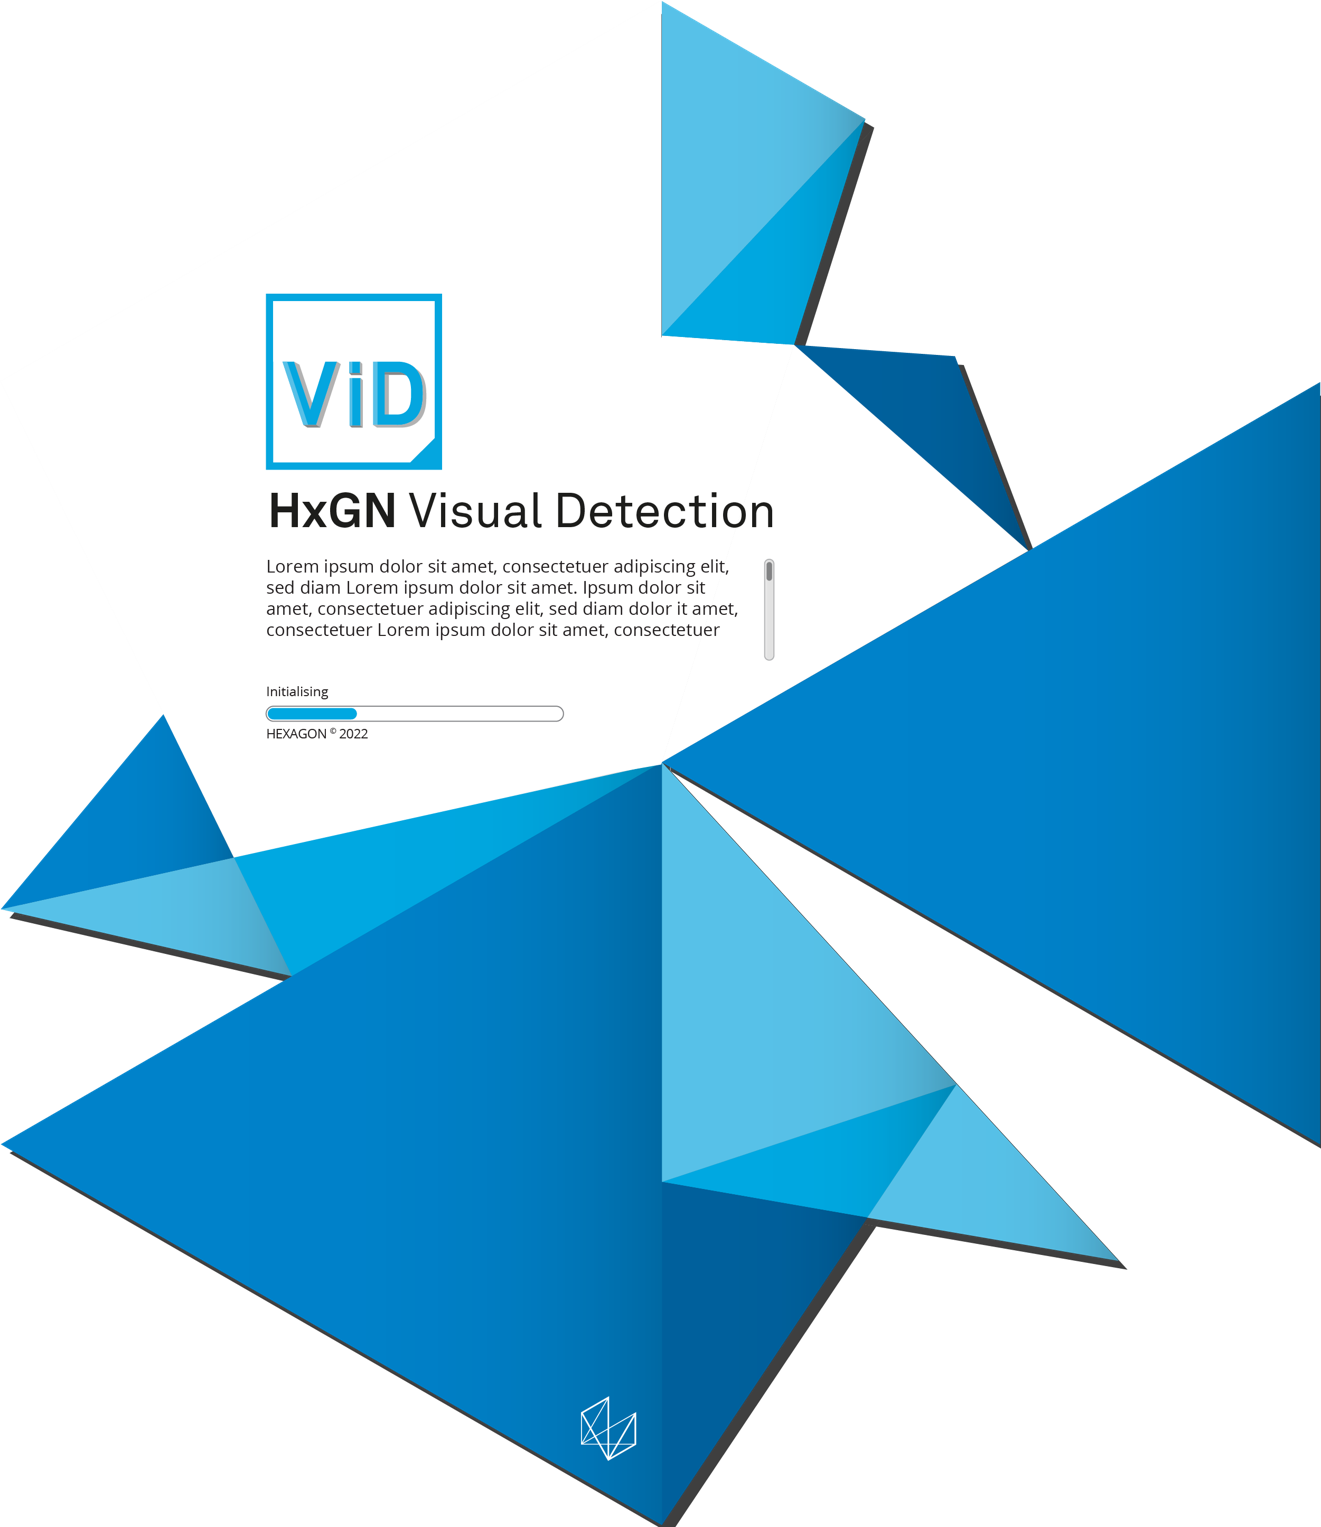 HxGN Visual Detection 人工智能产品瑕疵模型训练平台 (图1)